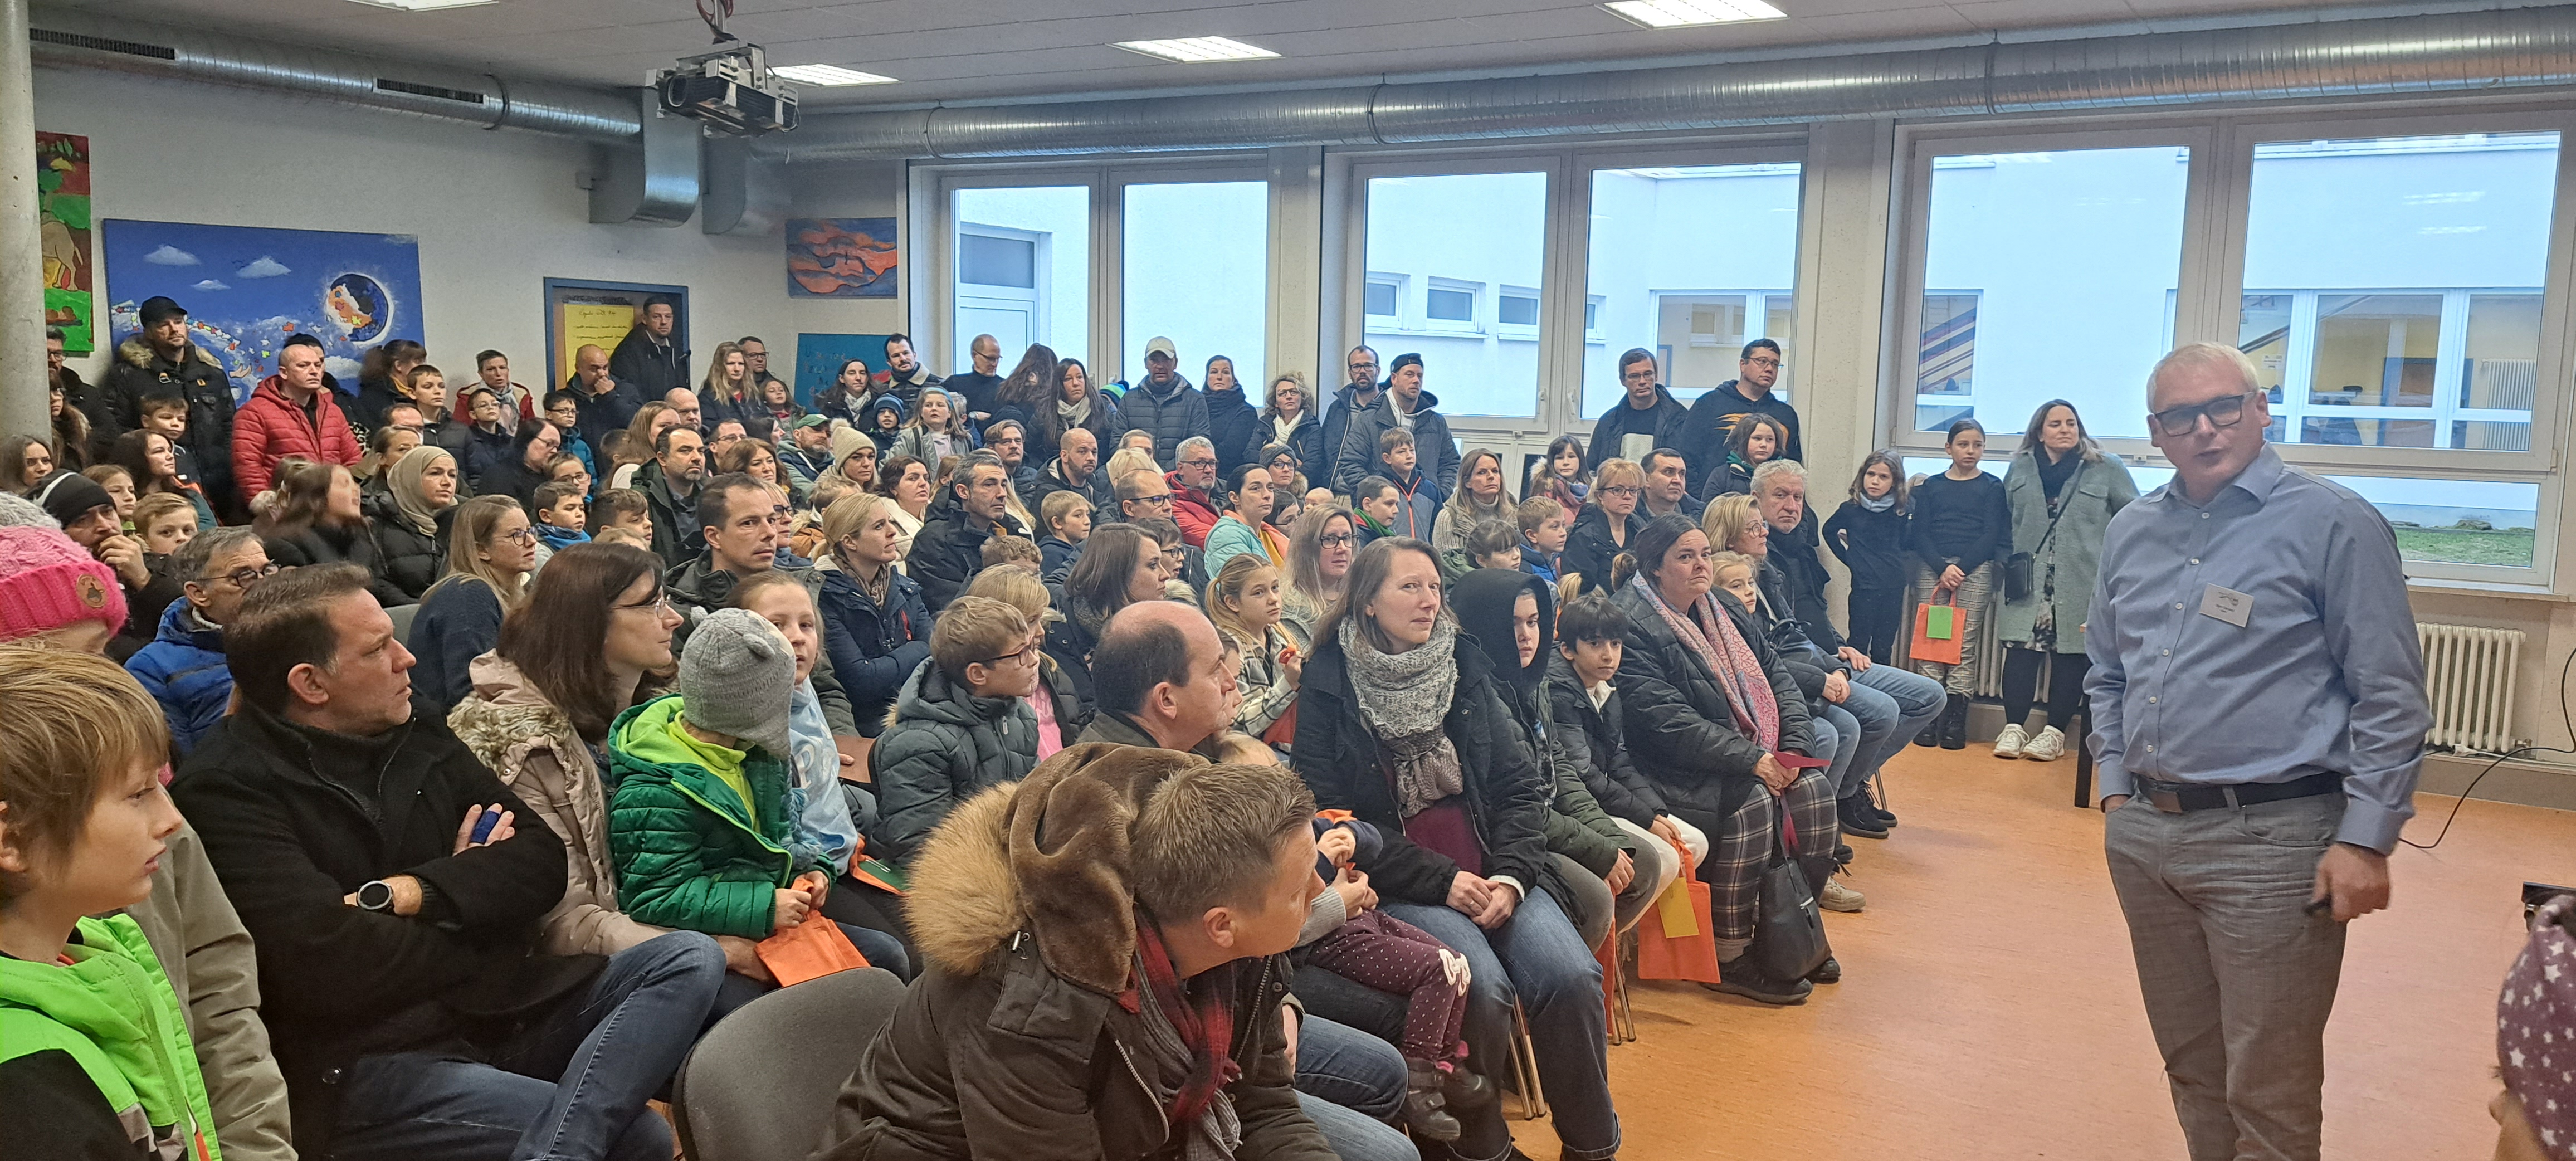 Der Schulleiter Timo Djelassi begrüßte sie zahlreichen Eltern und Kinder und erklärte das Konzept der Brohltalschule Niederzissen.